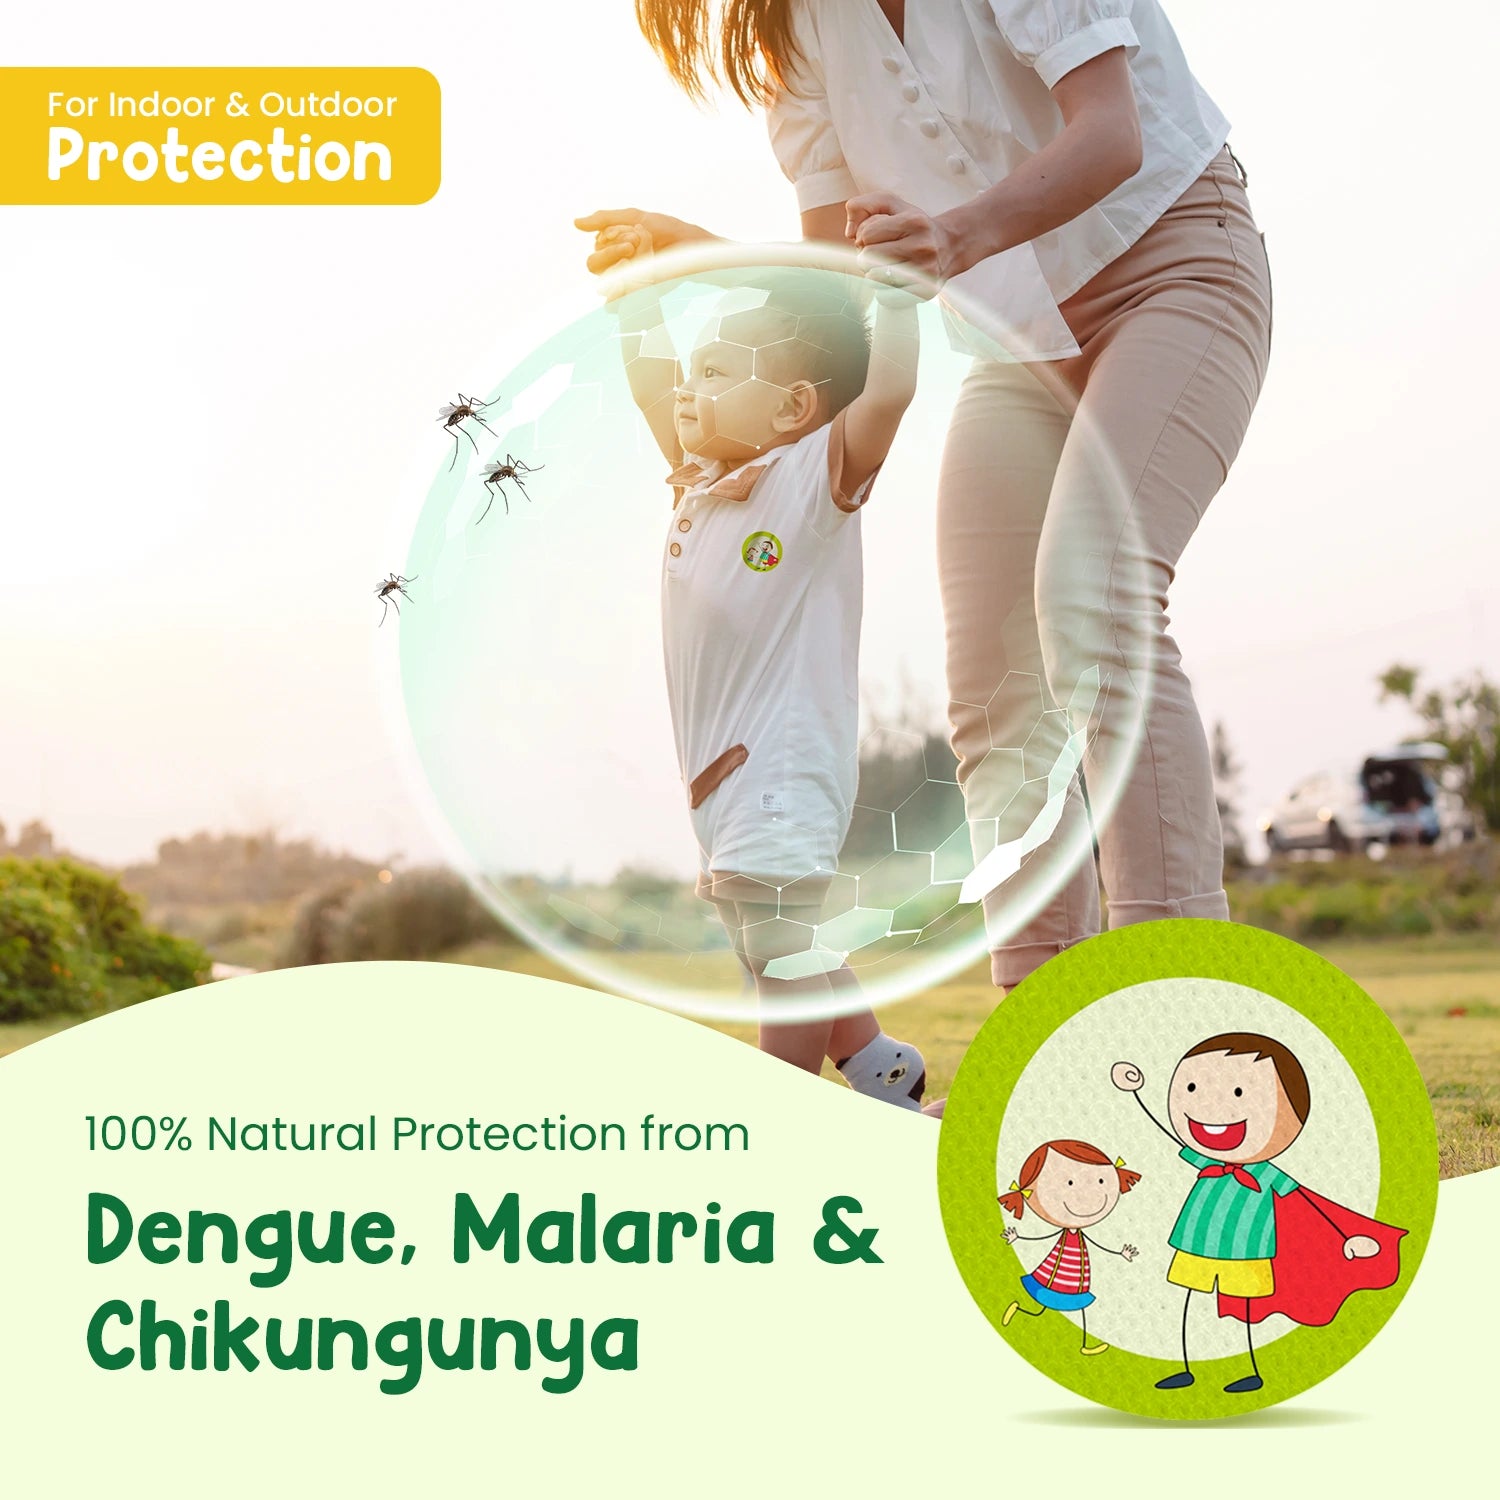 Natural Protection from Dengue, Malaria & Chikungunya Causing Mosquitoes